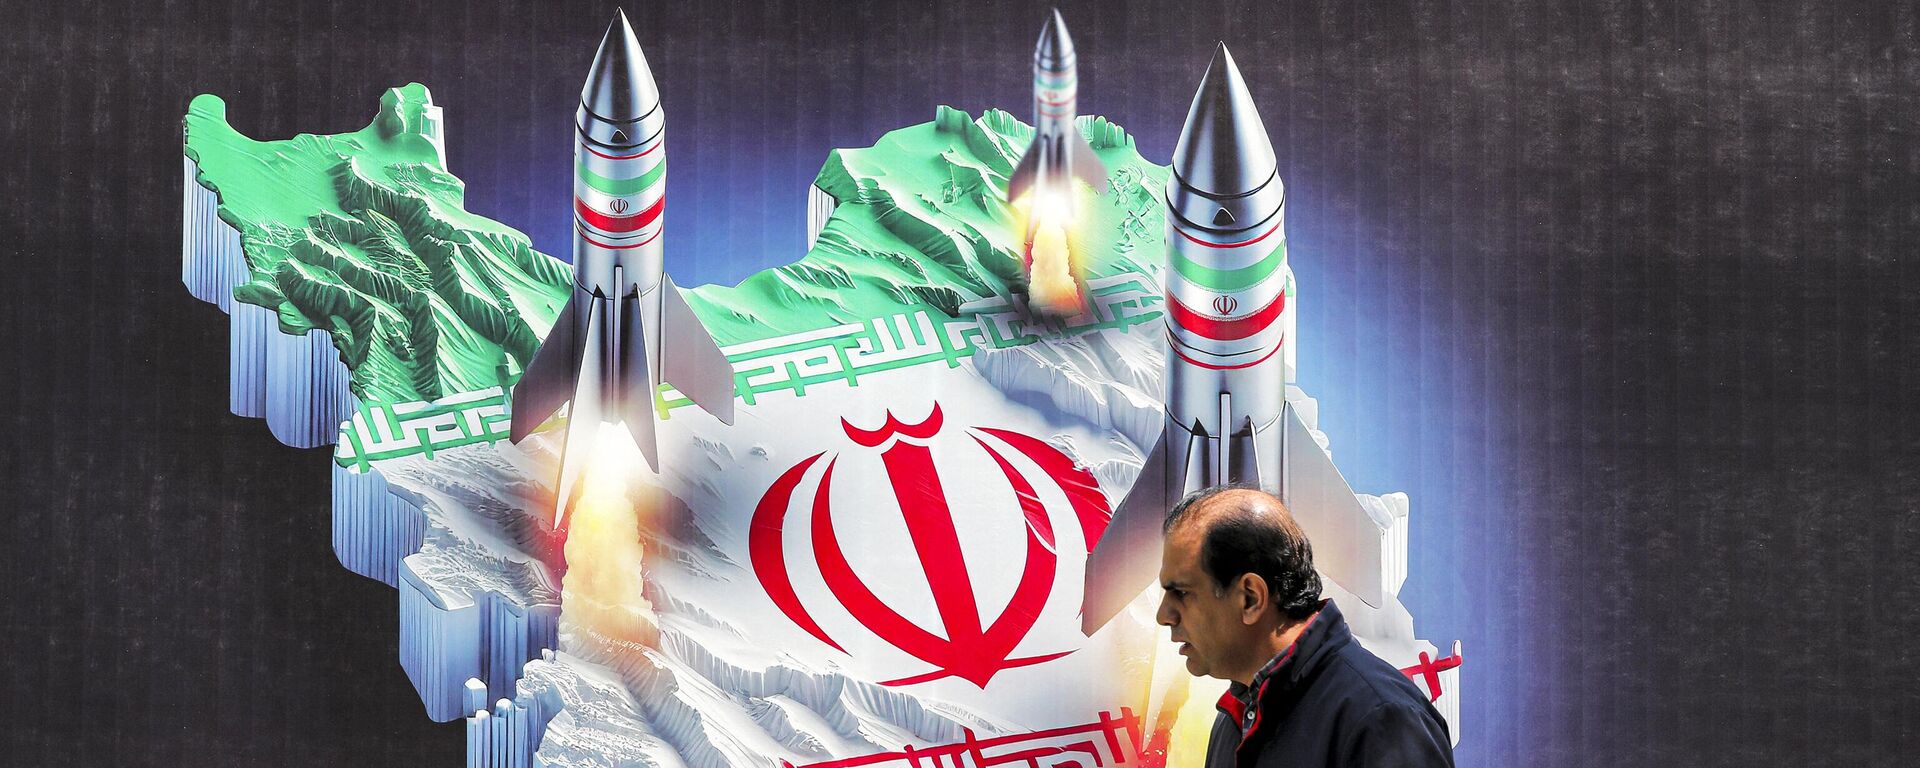 Билборд с изображением ракет и антиизраильским лозунгом в центре Тегерана, 15 апреля 2024 года - Sputnik Азербайджан, 1920, 15.04.2024